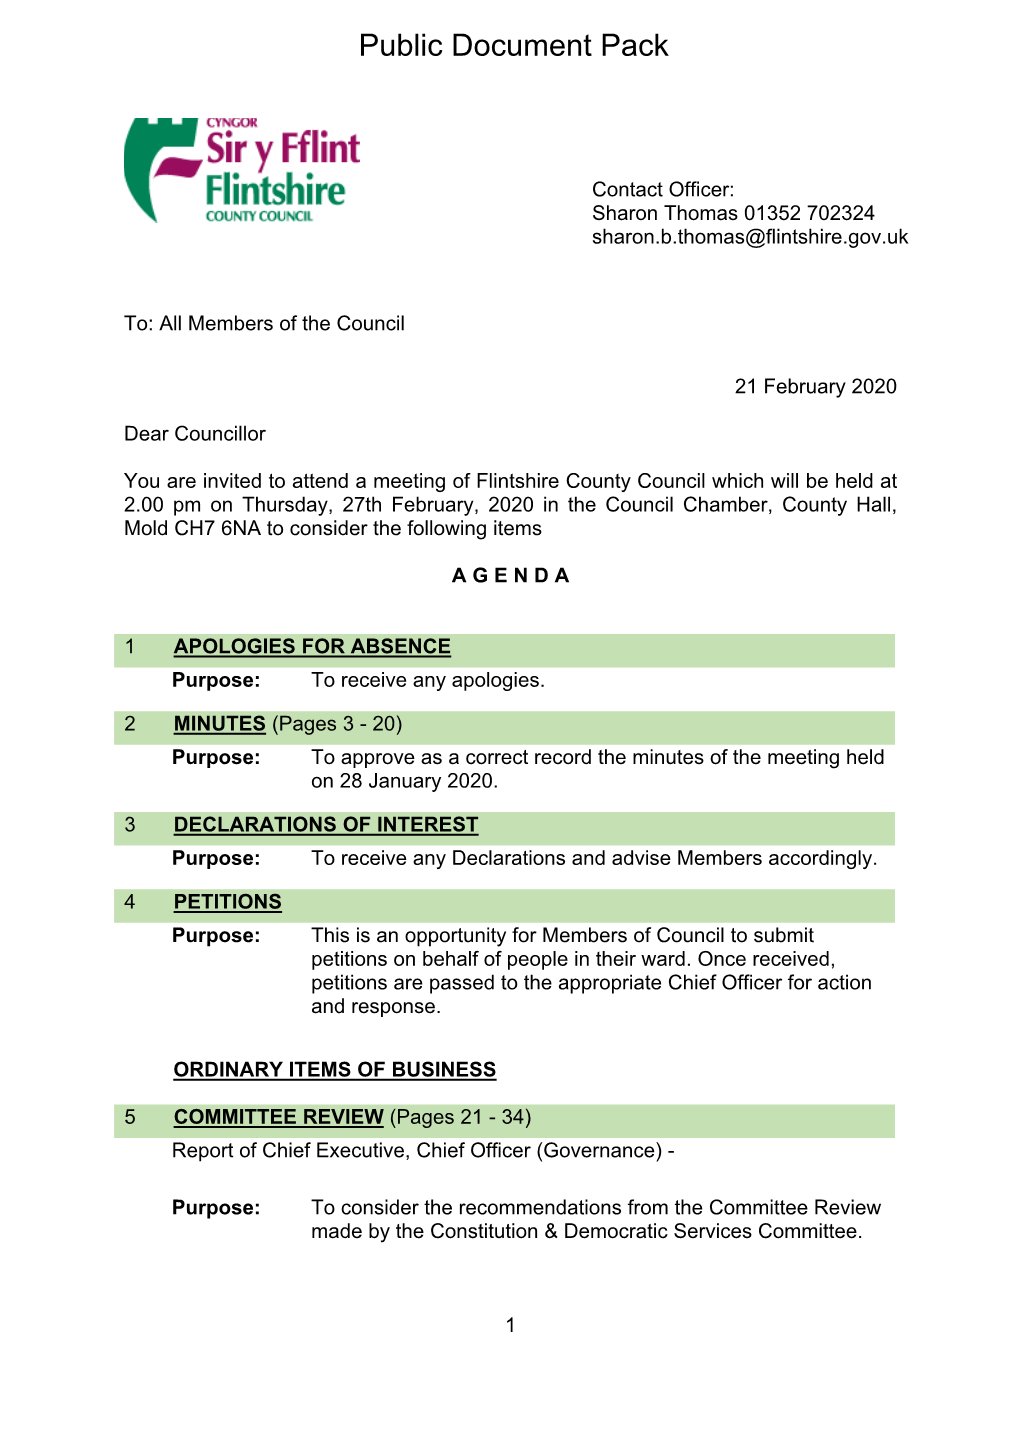 (Public Pack)Agenda Document for Flintshire County Council, 27/02